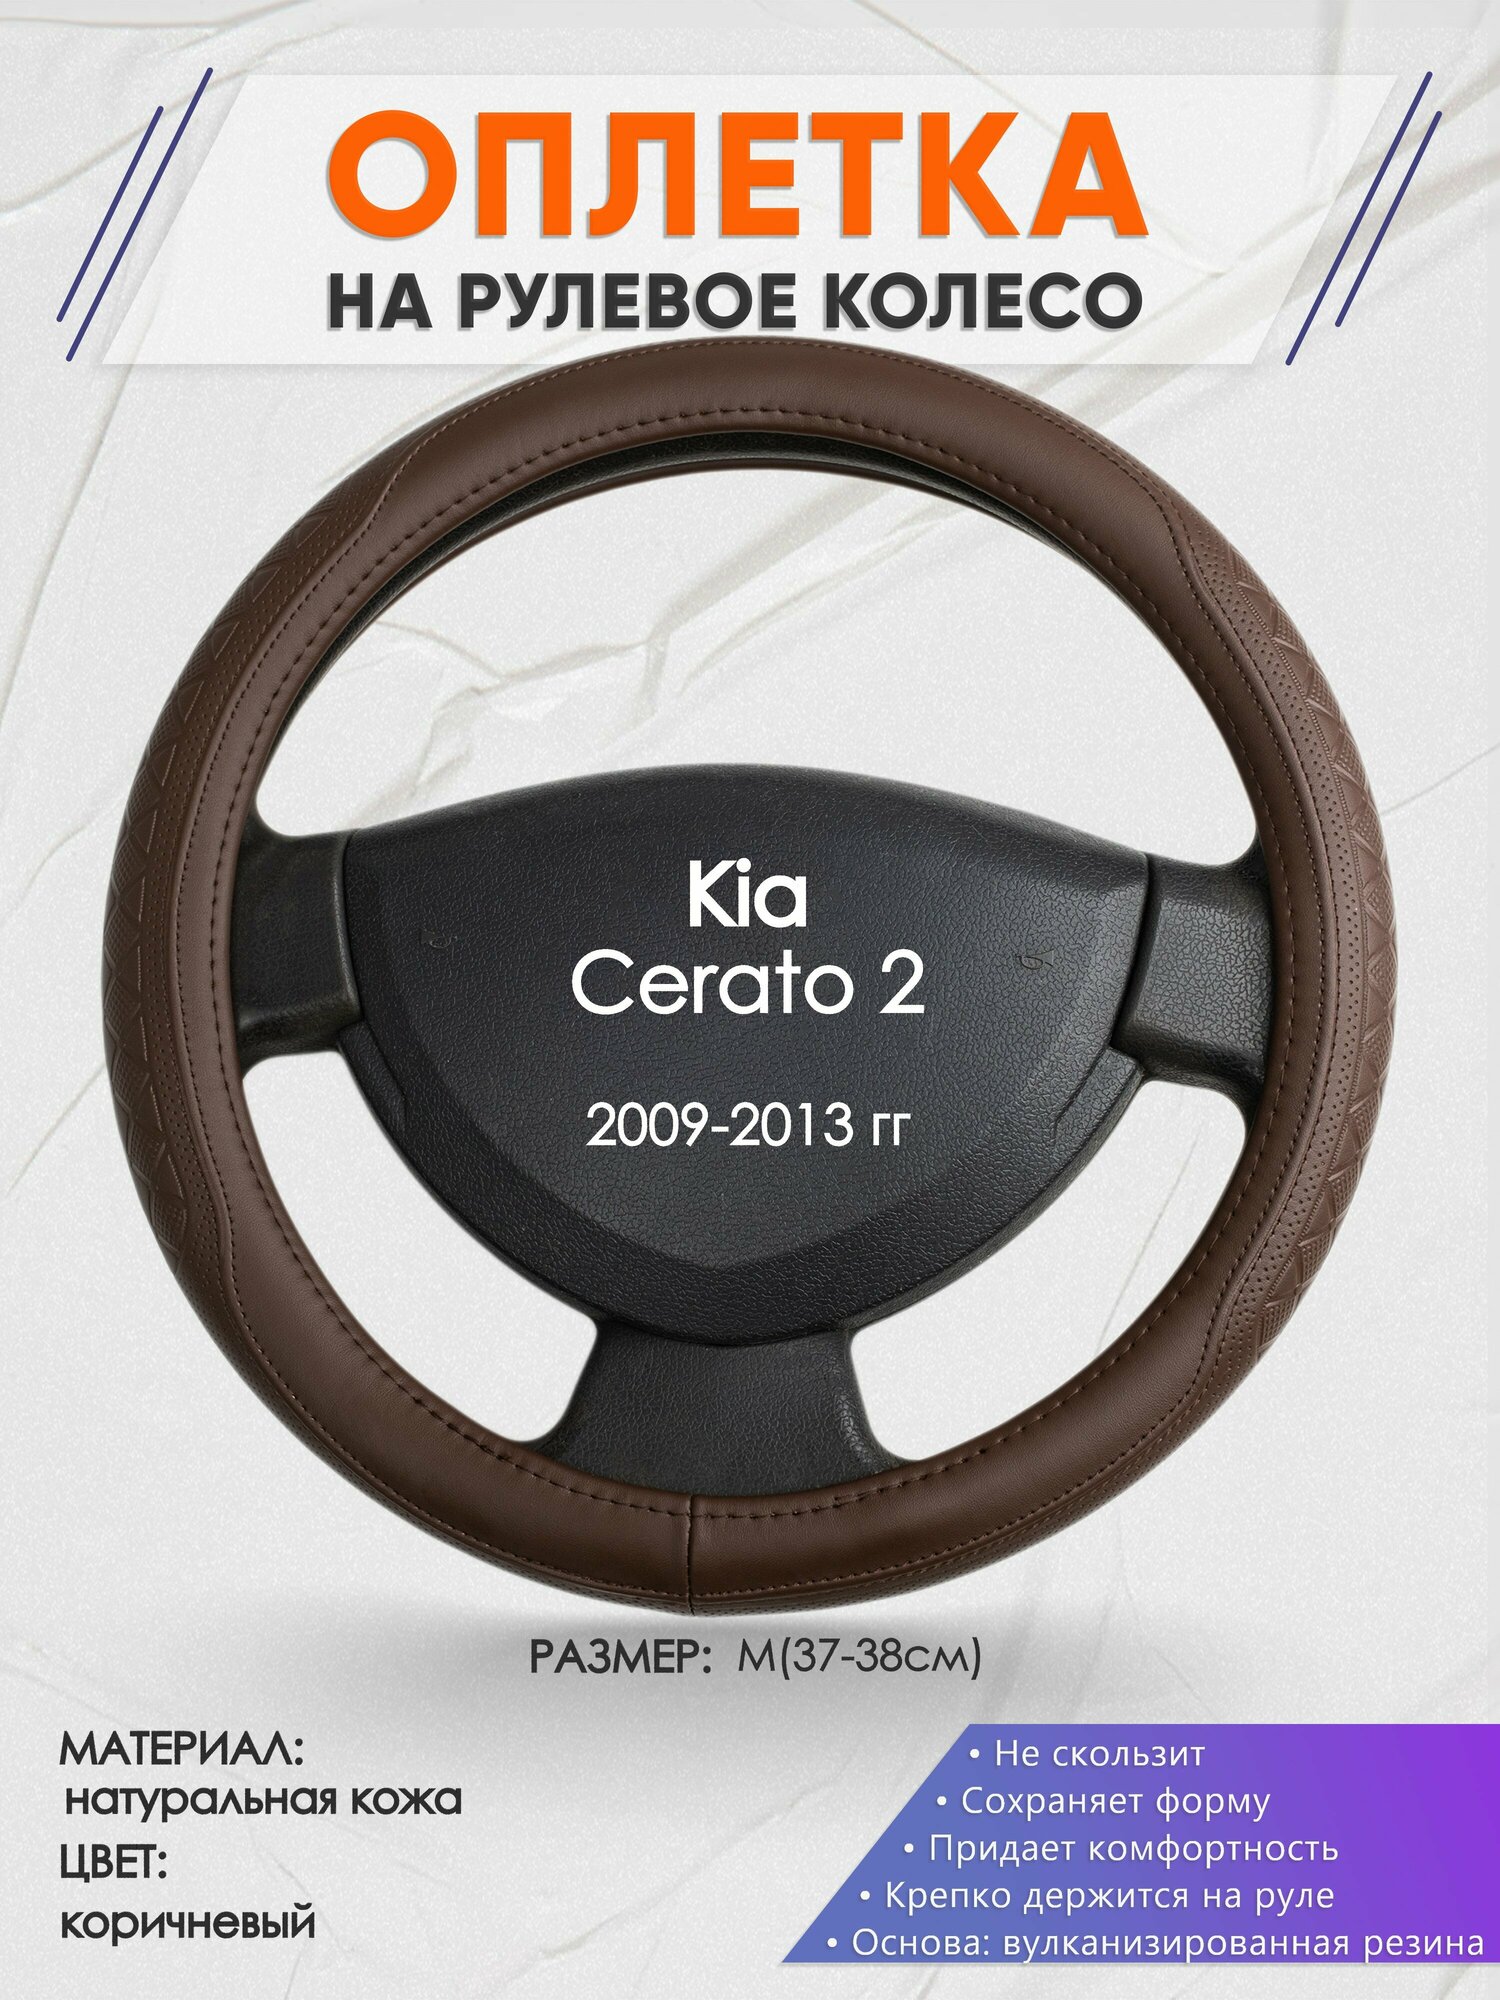 Оплетка на руль для Kia Cerato 2(Киа Церато 2) 2009-2013, M(37-38см), Натуральная кожа 88